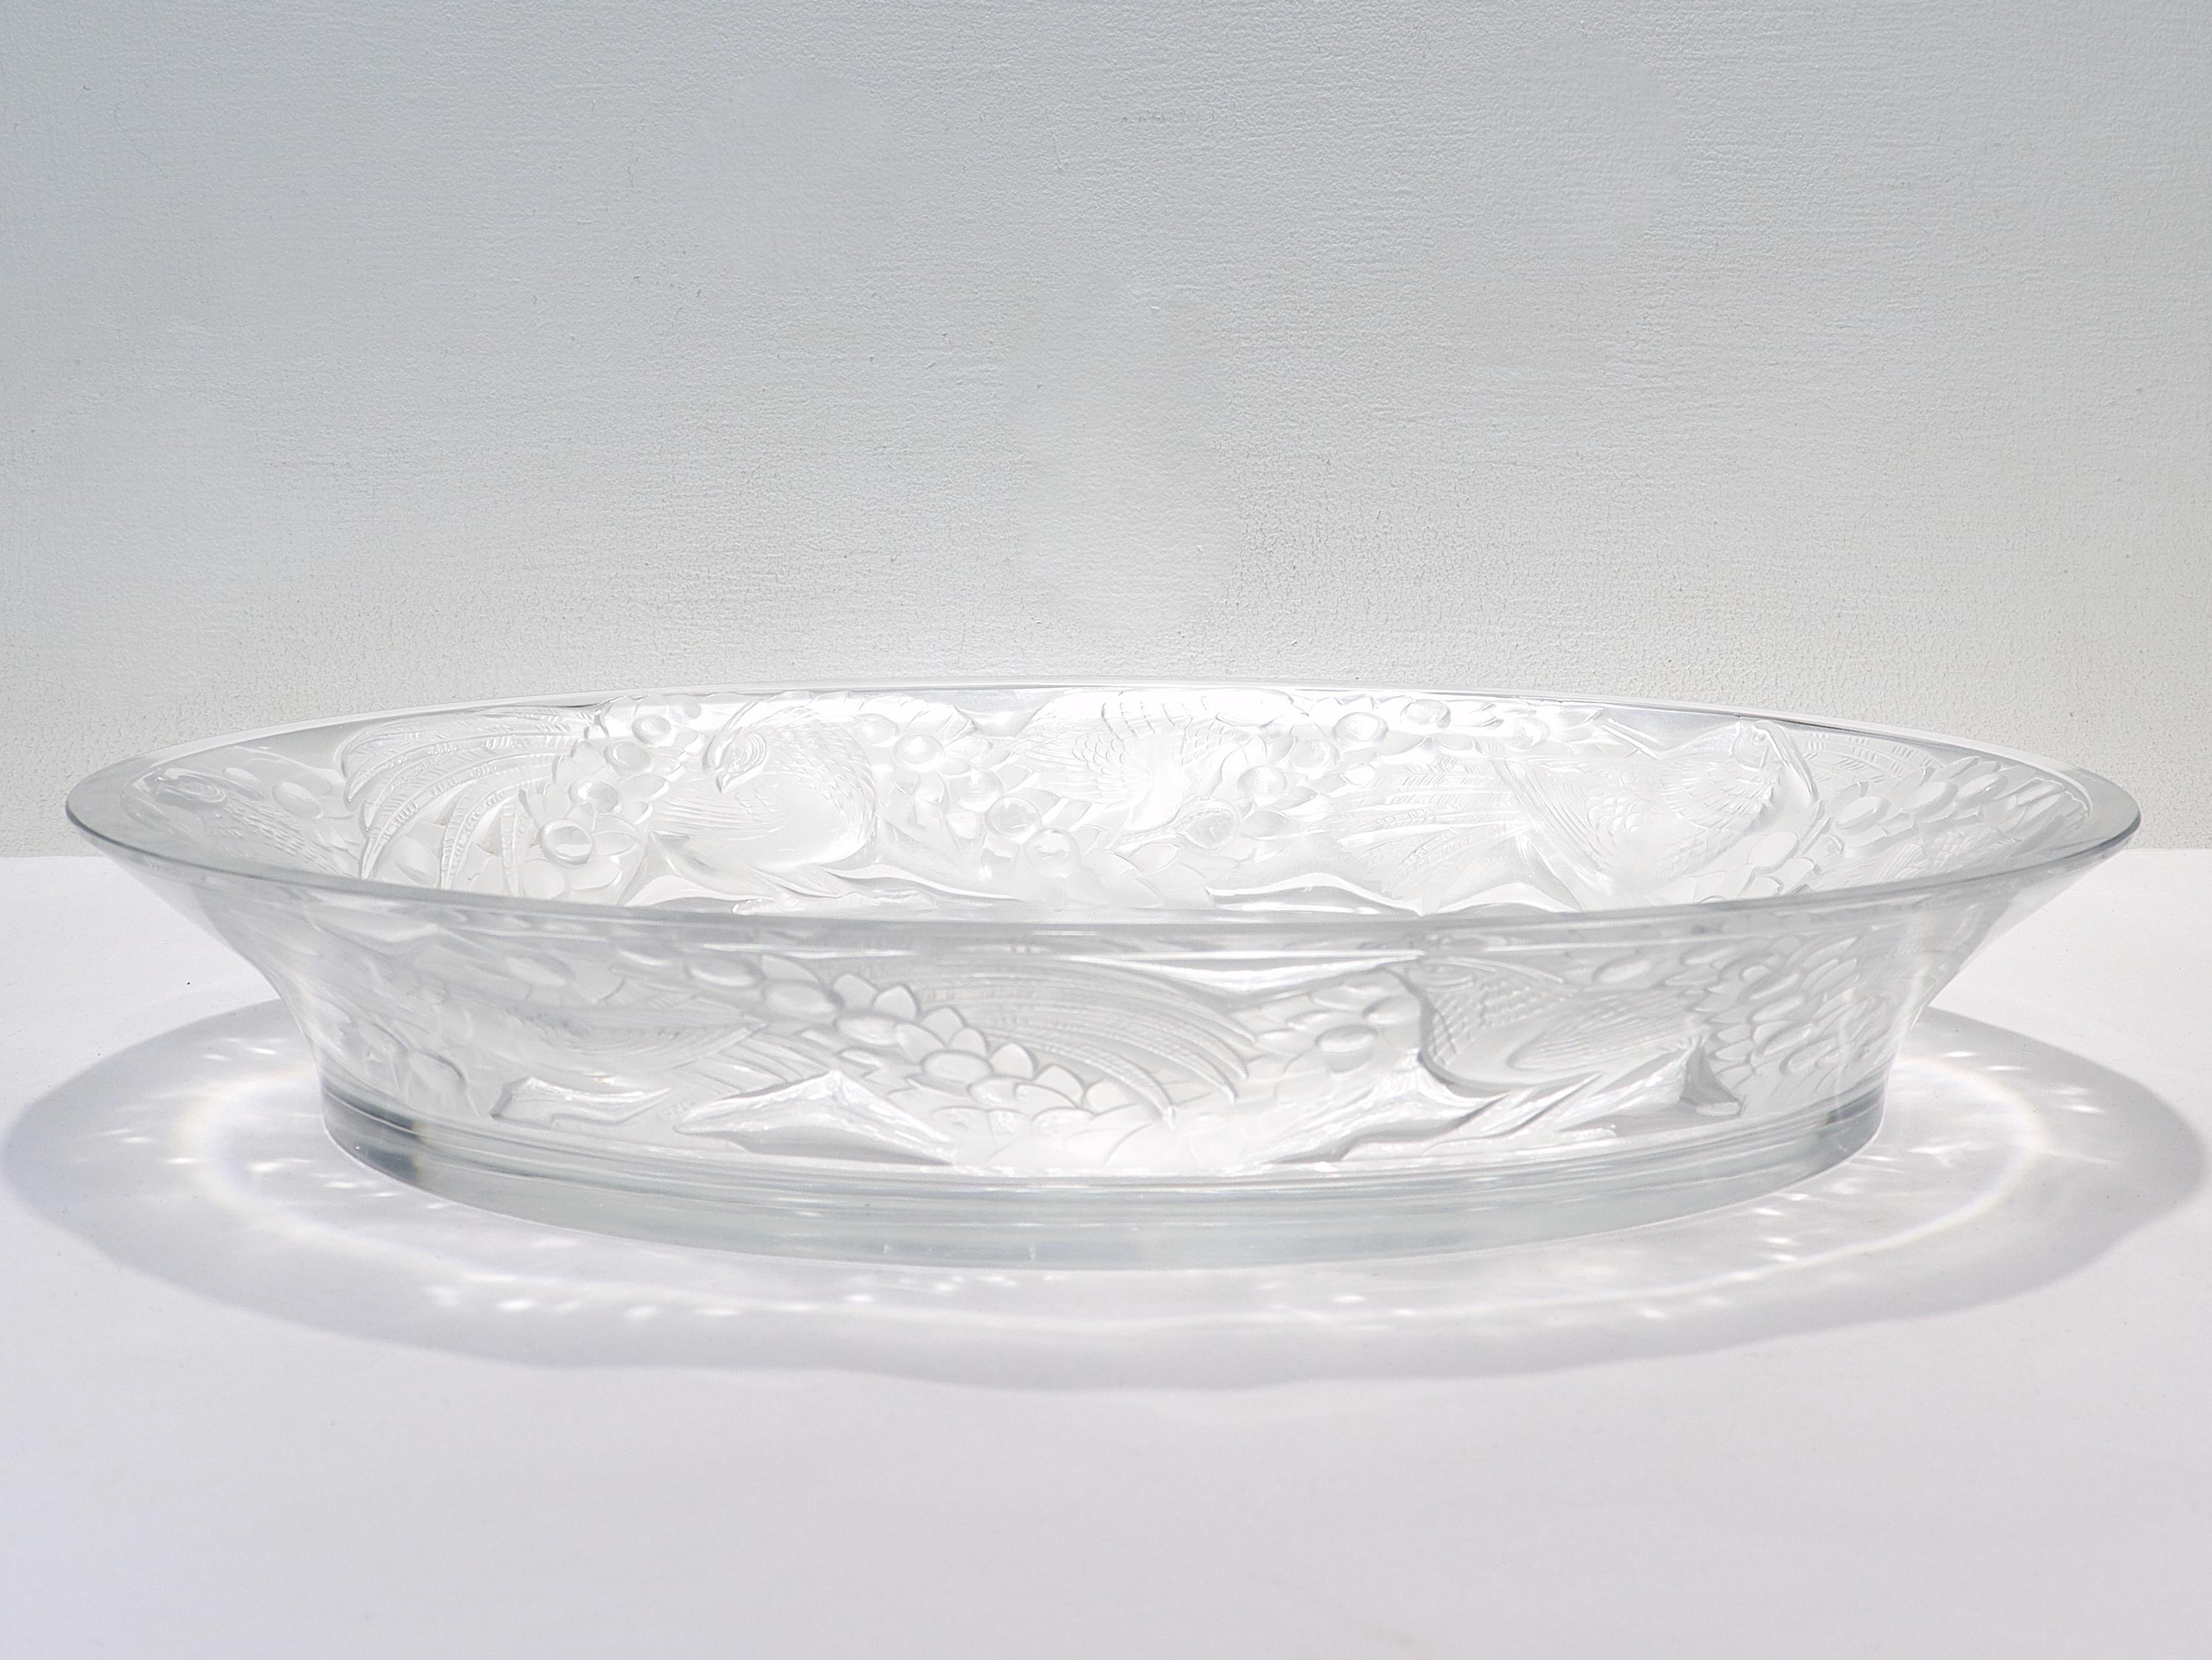 Antique Lalique Art Glass 'Faisans' Oval Bowl with Wide Rim Decor For Sale 1